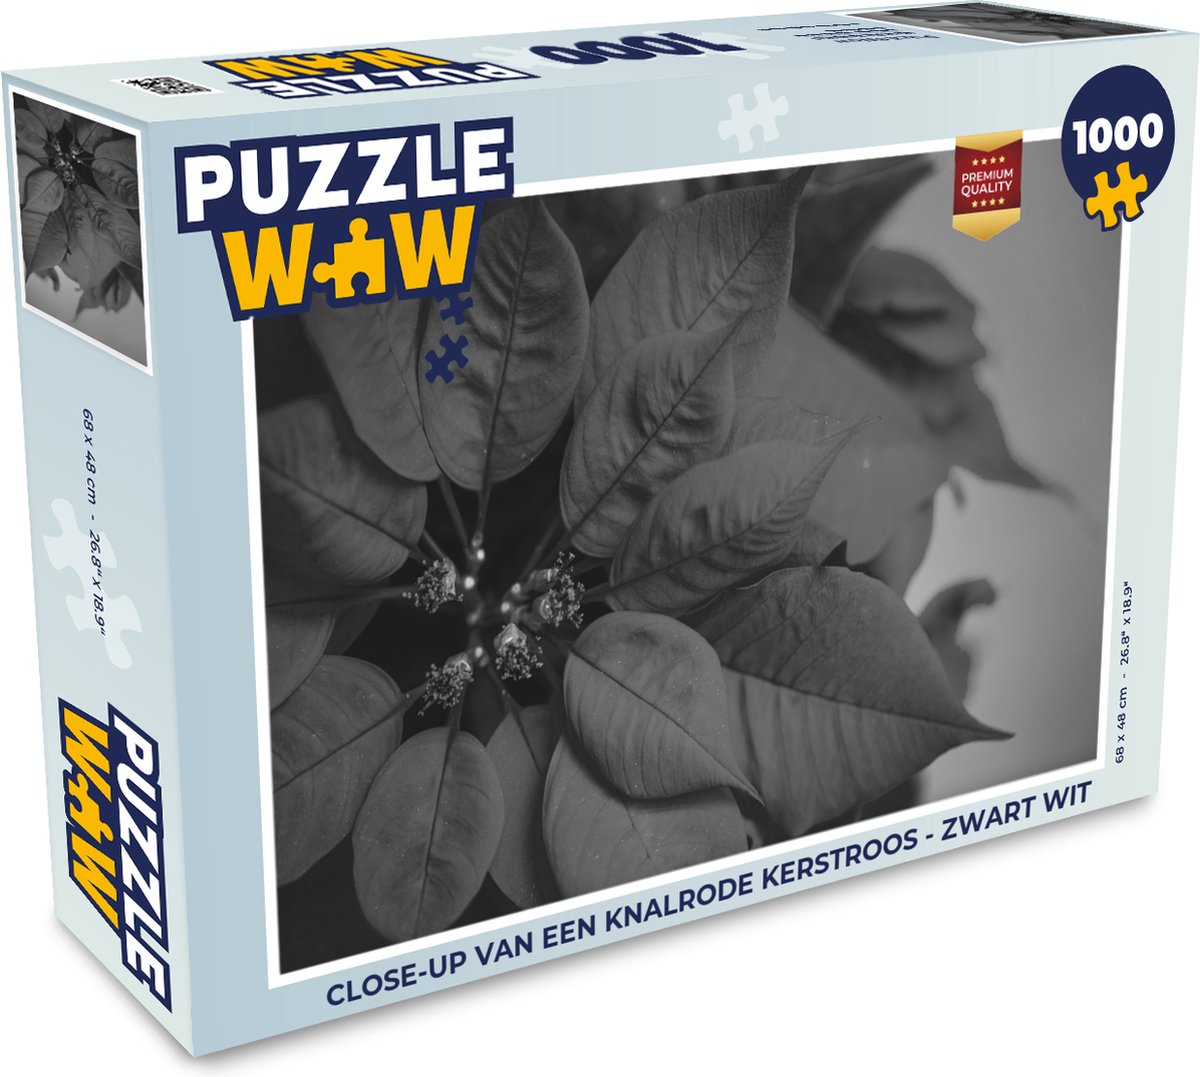 Puzzel Close-up van een knalrode Kerstroos - zwart wit - Legpuzzel - Puzzel 1000 stukjes volwassenen - Kerst Puzzel - Christmas Puzzel